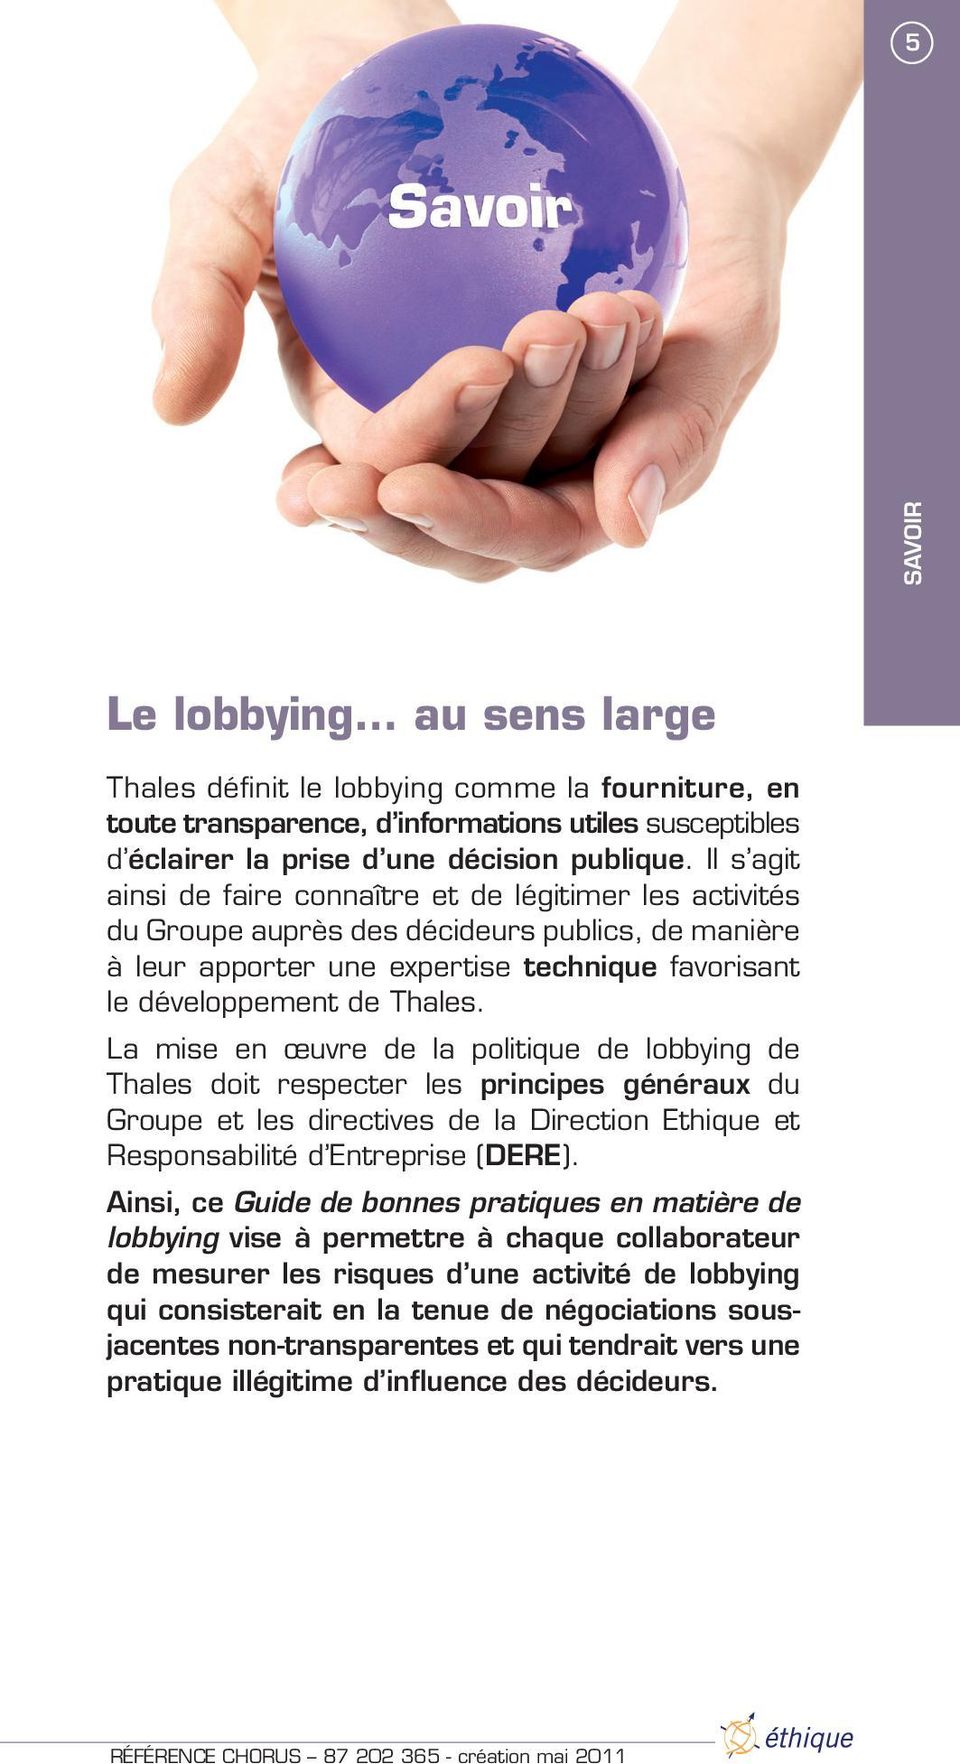 La mise en œuvre de la politique de lobbying de Thales doit respecter les principes généraux du Groupe et les directives de la Direction Ethique et Responsabilité d Entreprise (DERE).